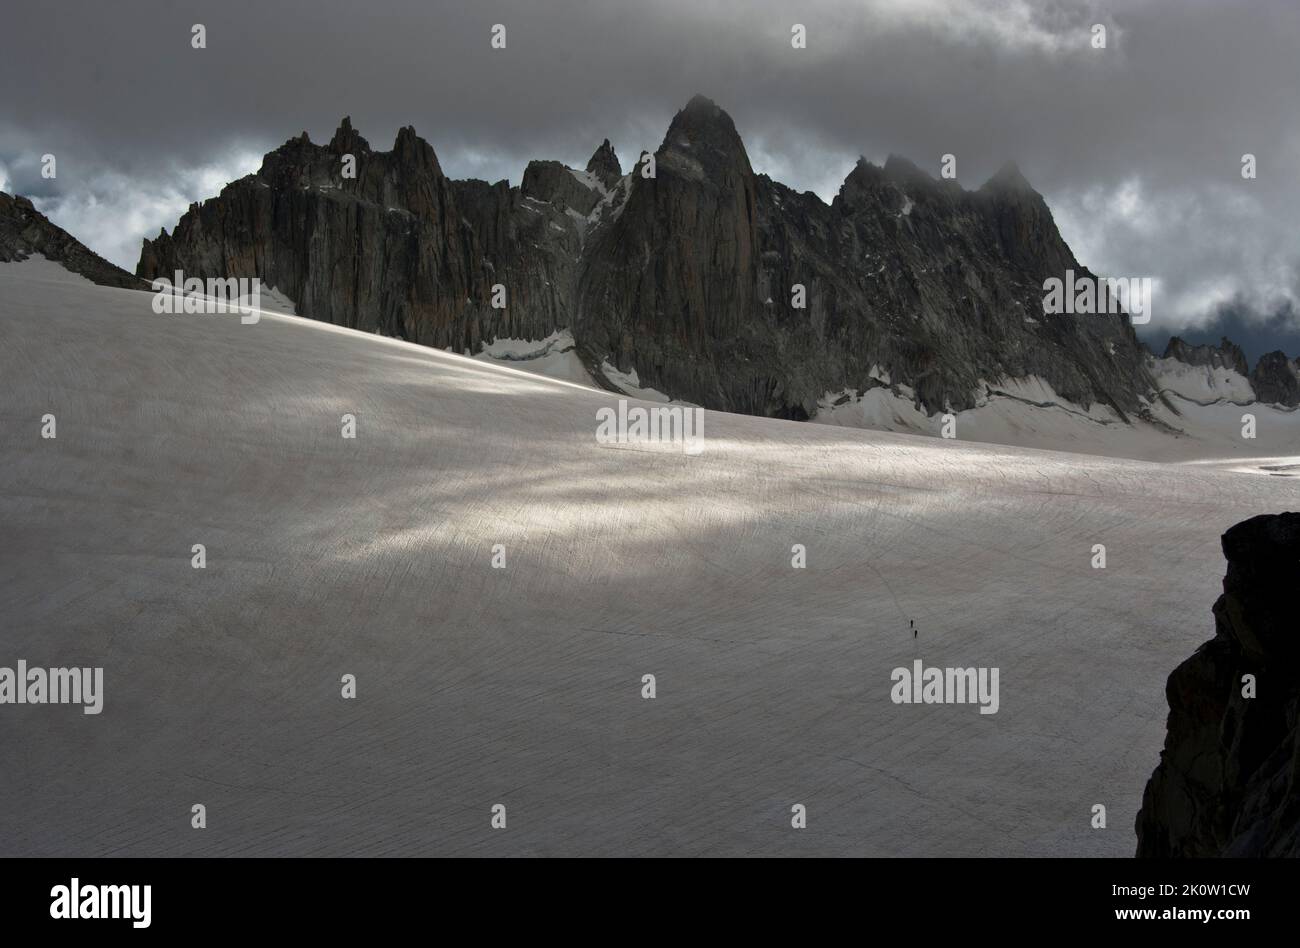 Dramatische Blicke auf den Glacier de Trient mit den Aigulles Dorées im Hintergrund Stock Photo